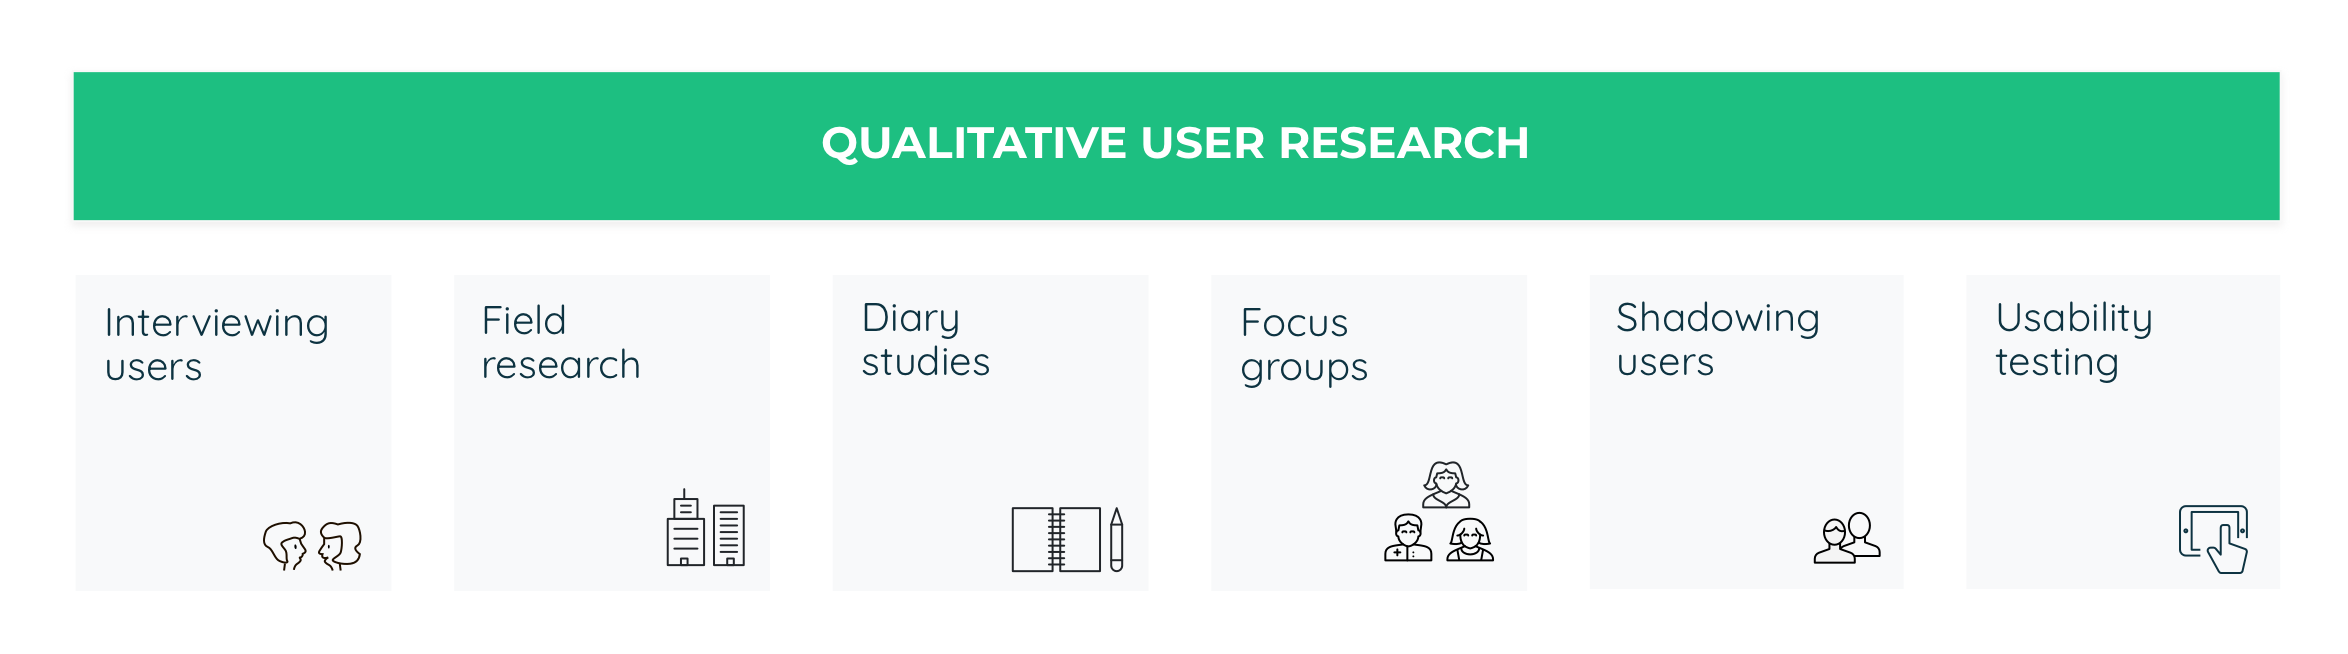 Qualitative user research